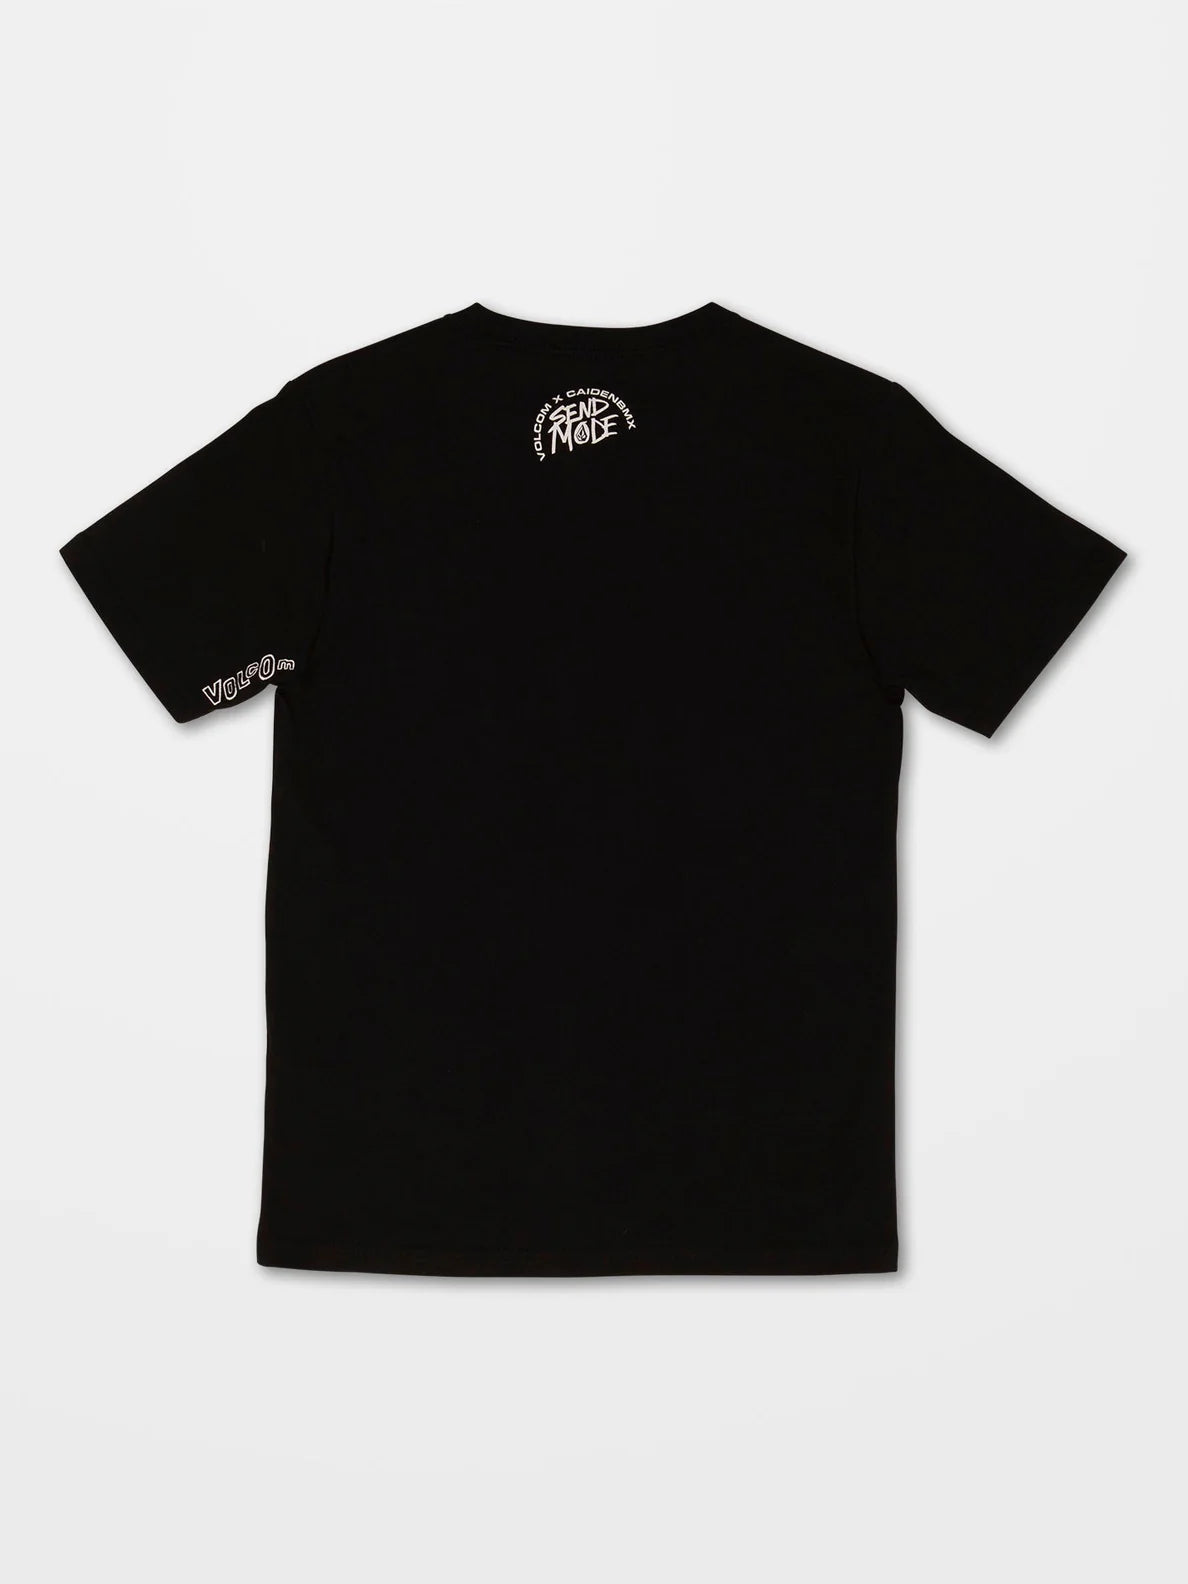 Camiseta niño Volcom Send Mode Black